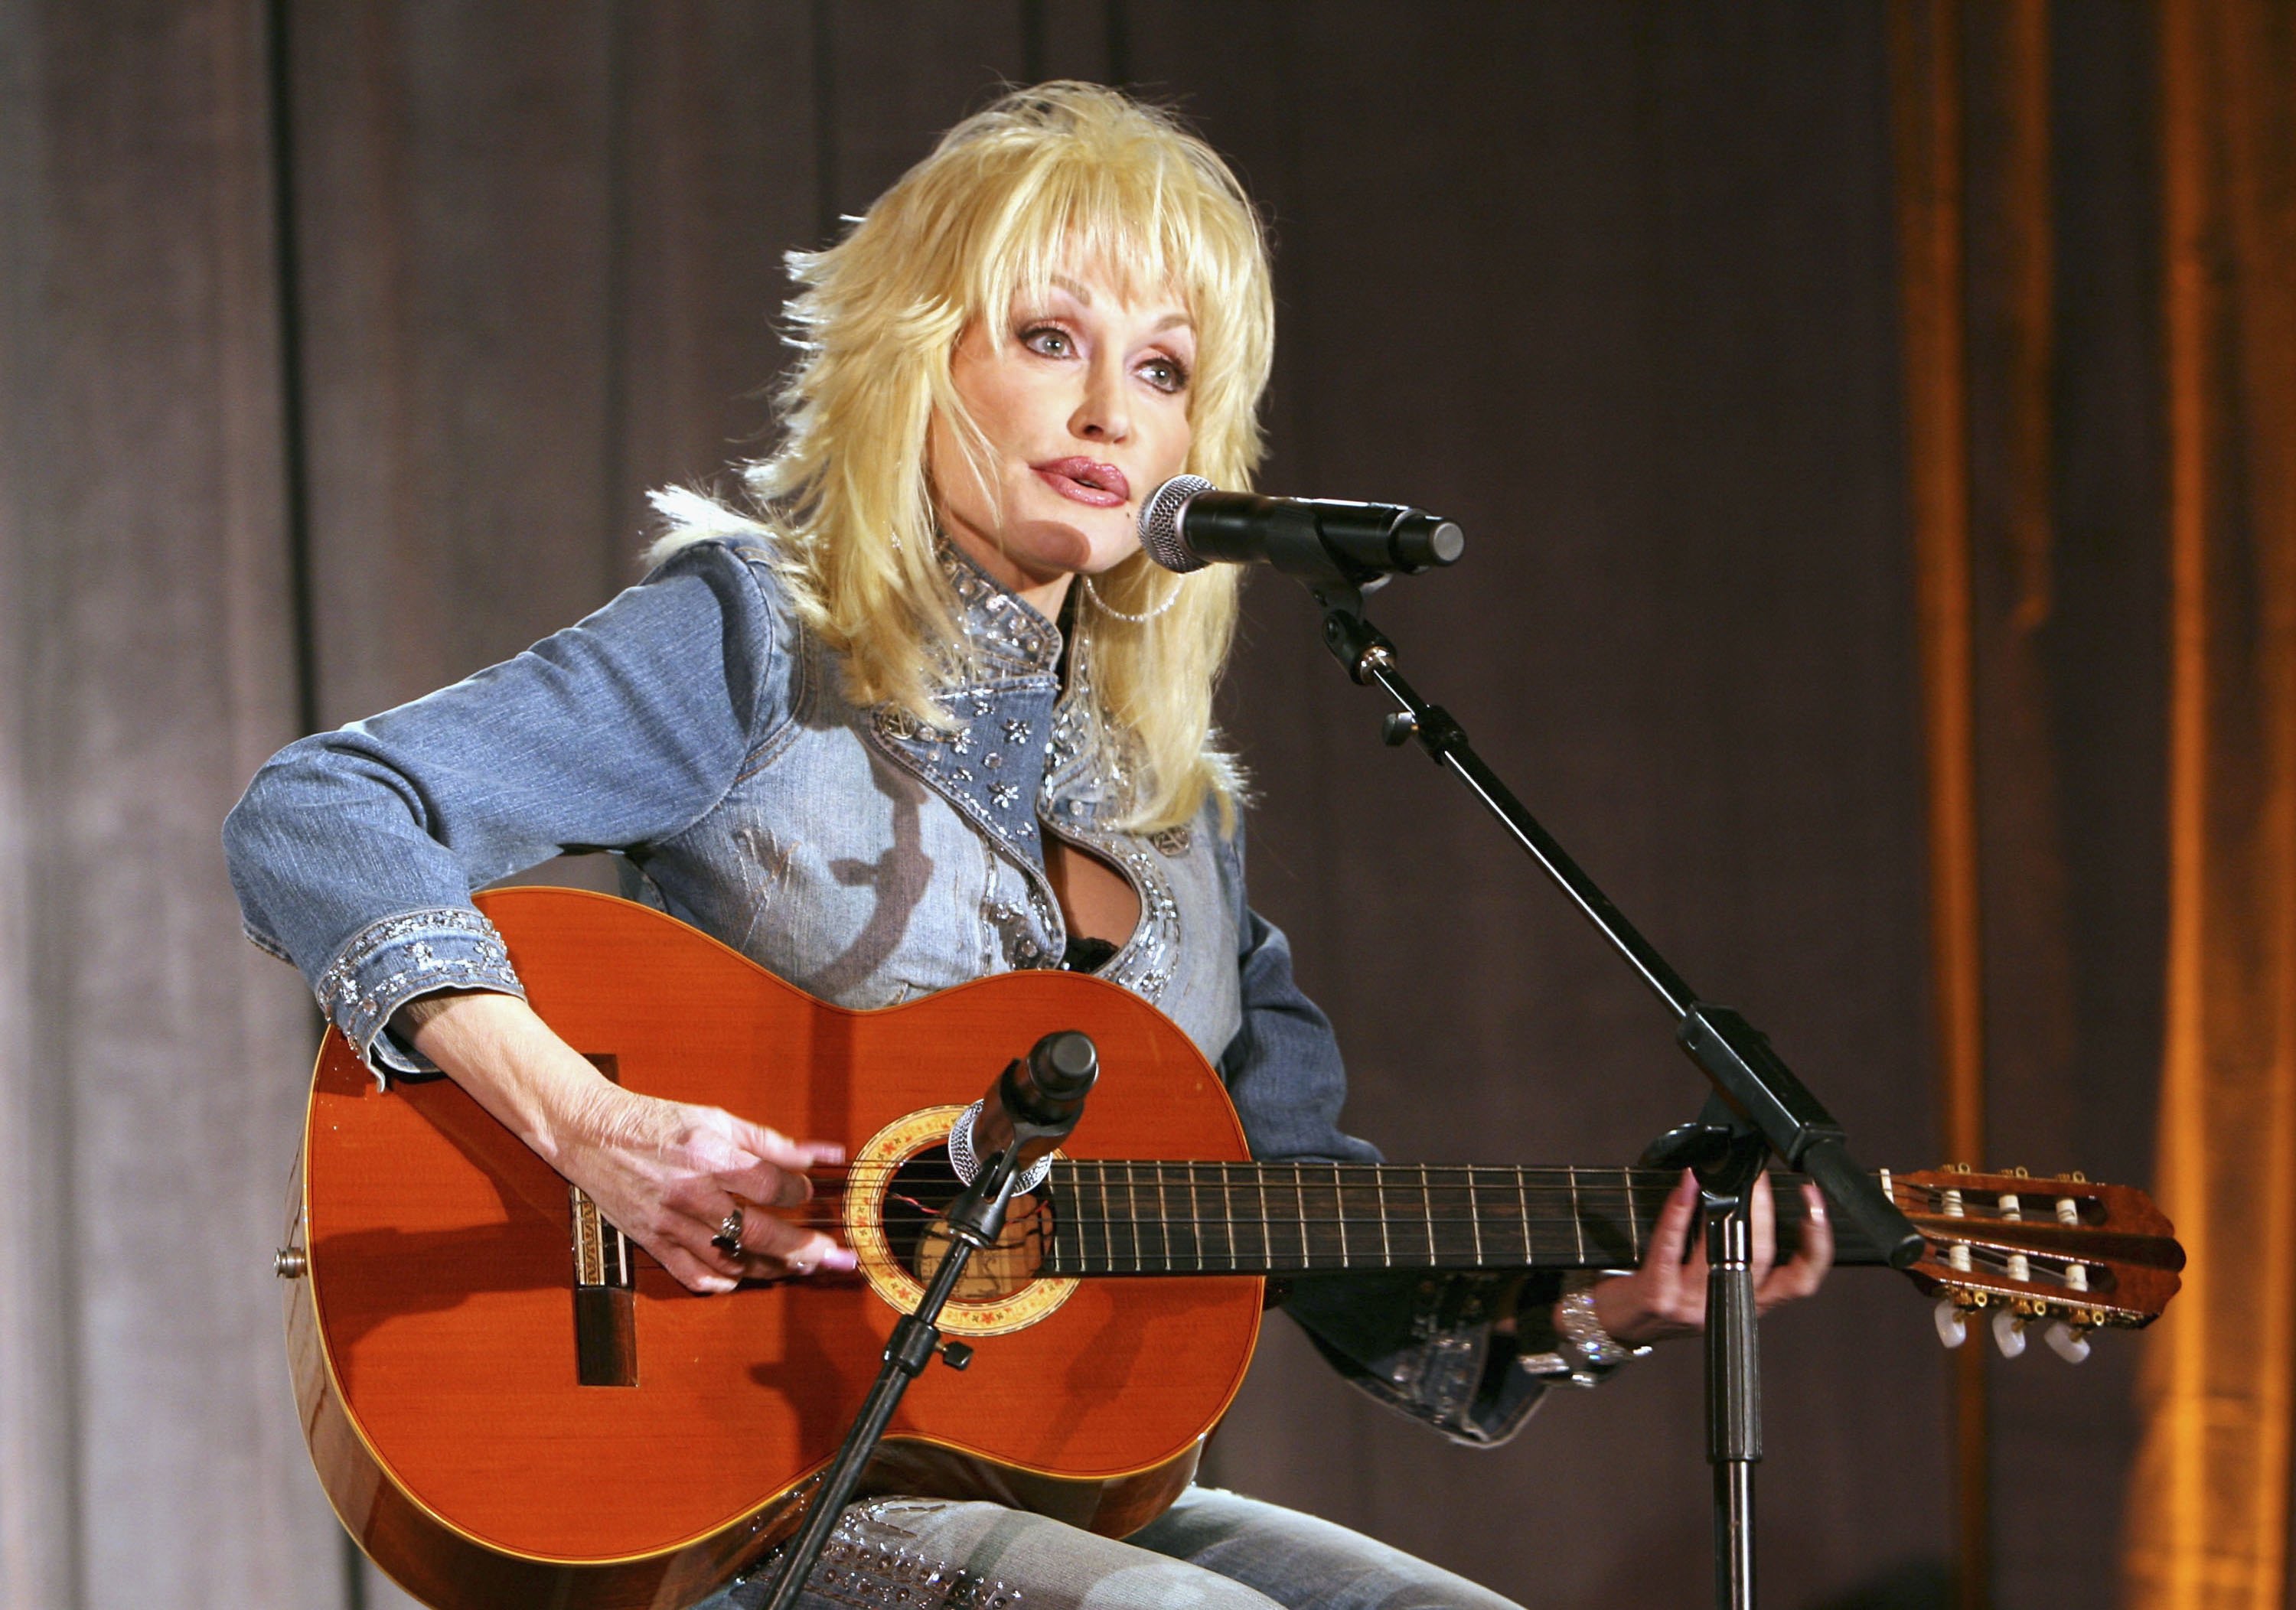 Dolly Rebecca Parton föddes 1946 i Tennessee och är en låtskrivare och countrysångerska som skrivit över 3000 låtar. Hon debuterade redan som 13-åring med "Puppy Love" men fick sitt stora genombrott med "Jolene" 1973.